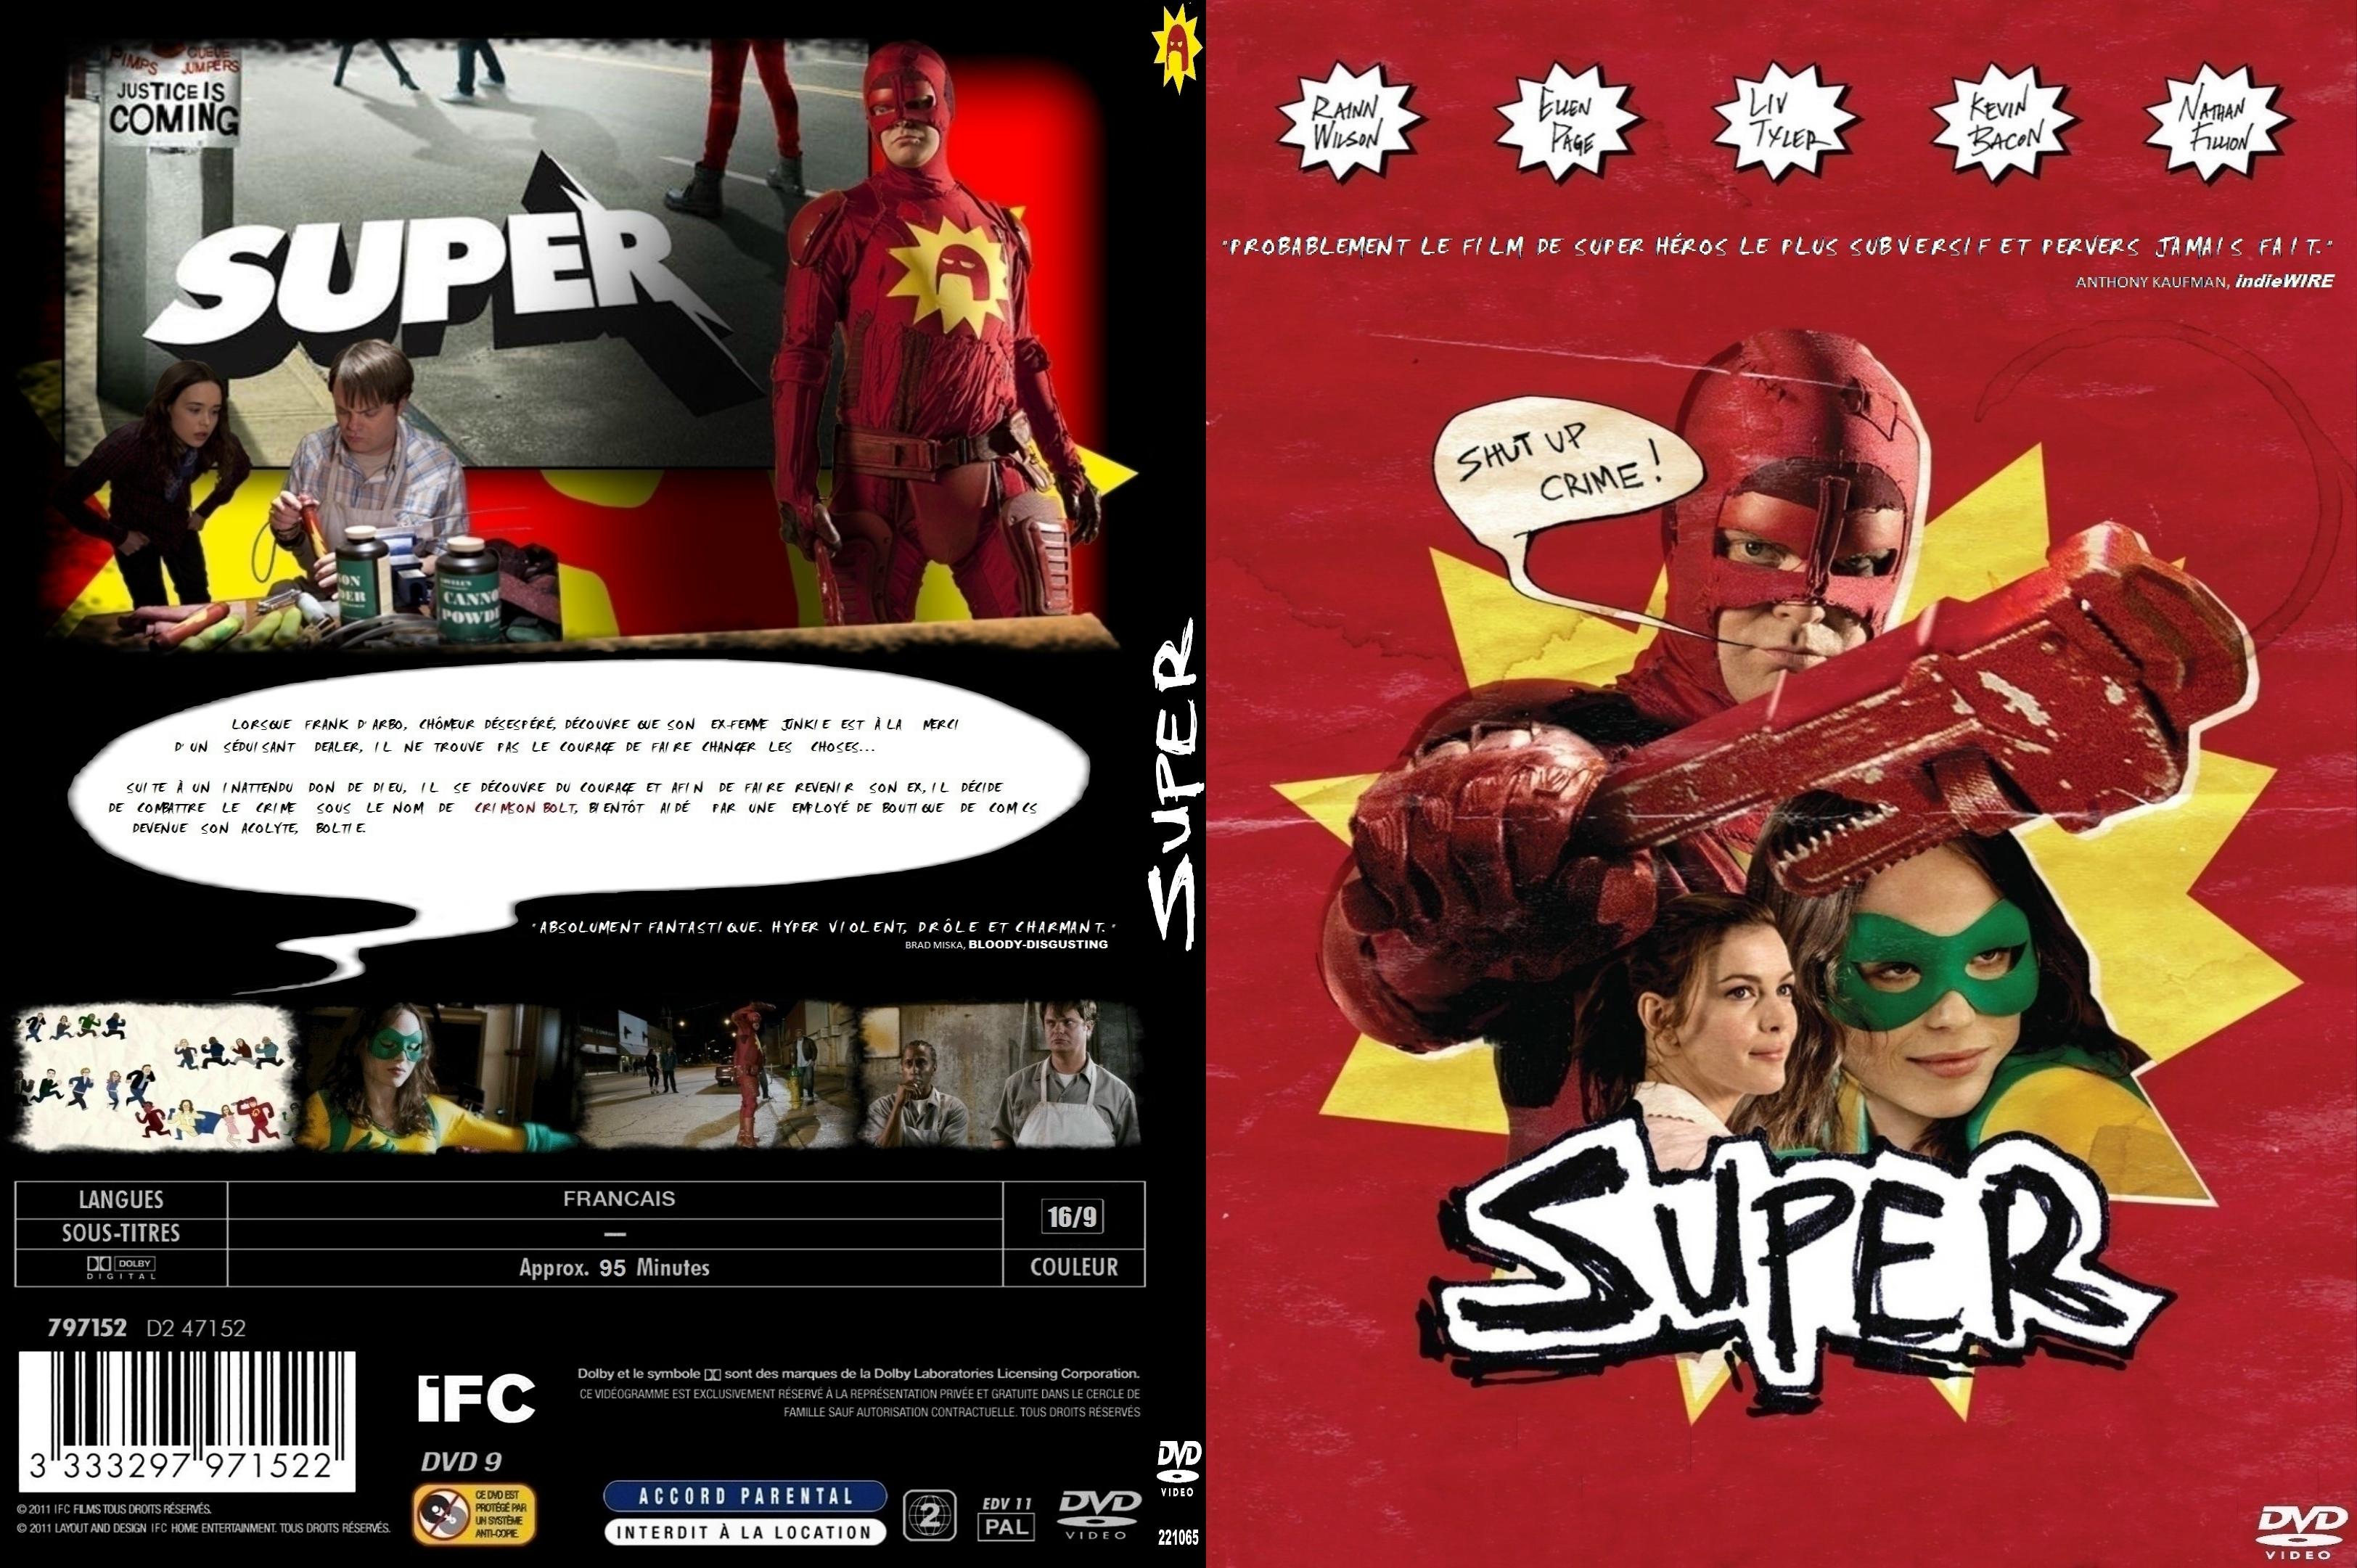 Jaquette DVD Super custom - SLIM